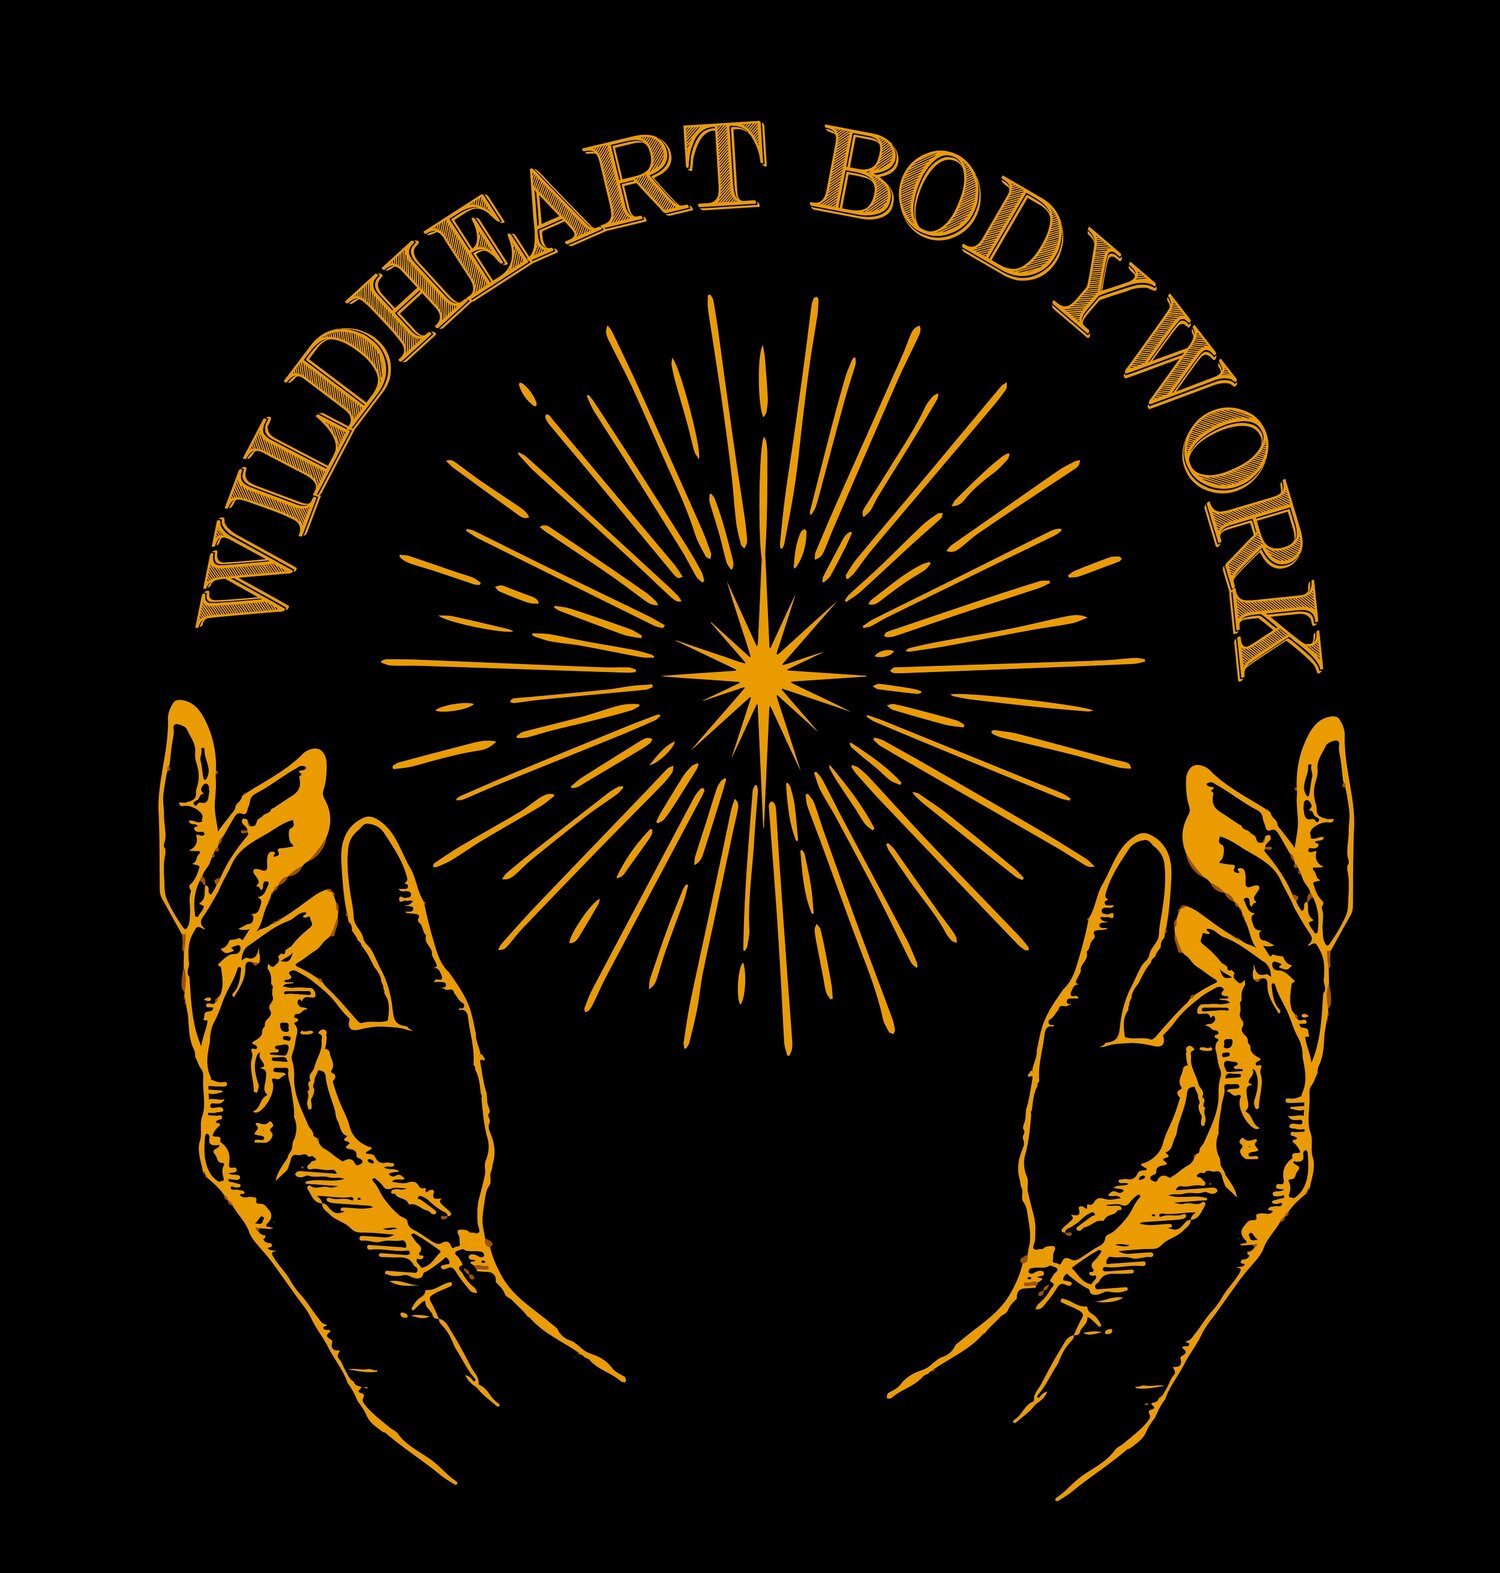 wildheart bodywork